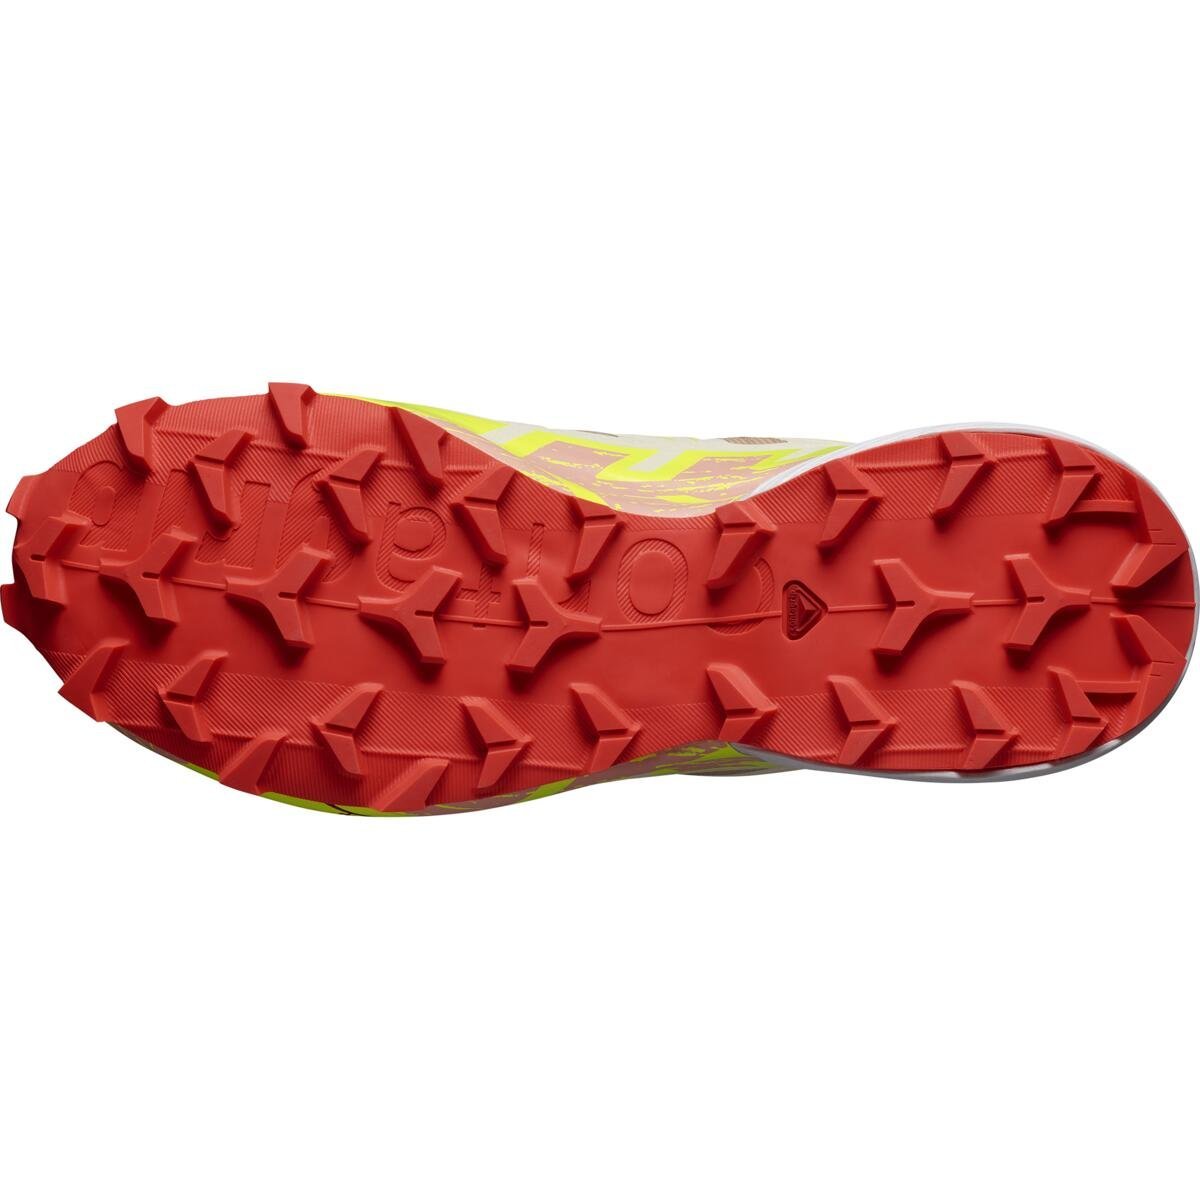 Obuv Salomon Speedcross 6 GTX W - hnedá/žltá/červená